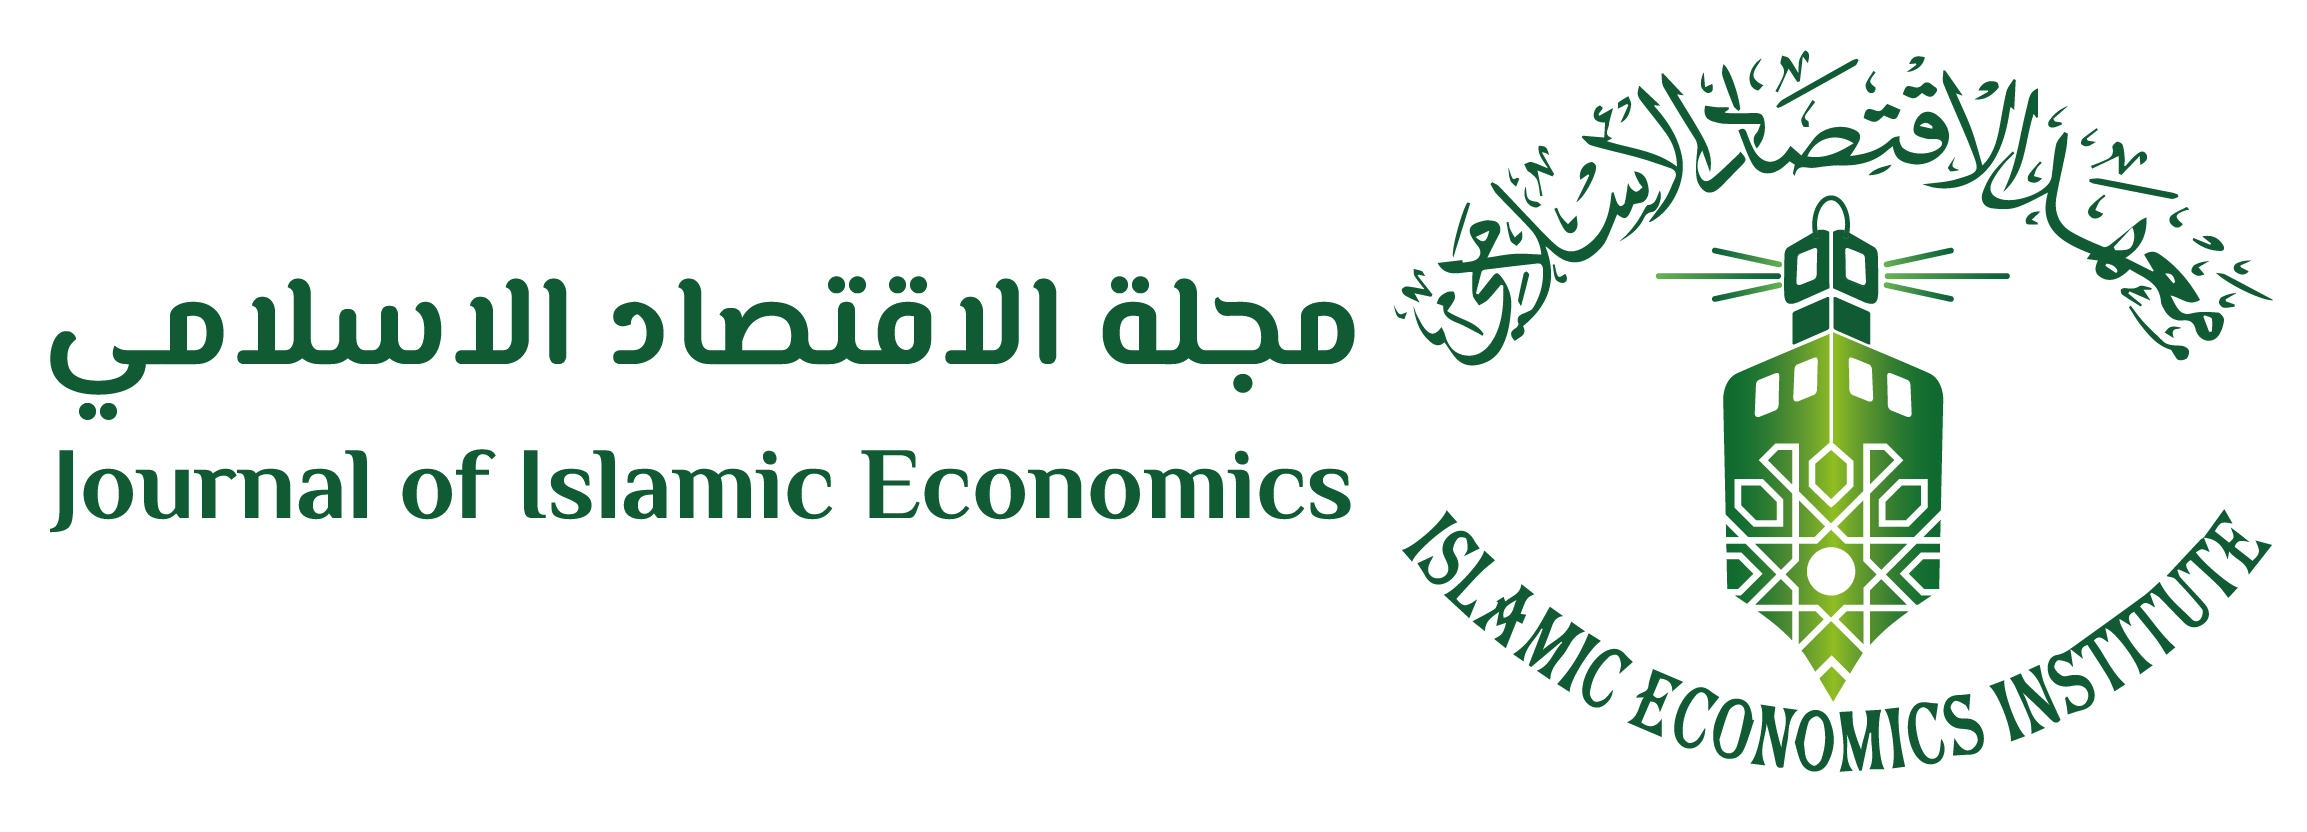 مجلة الاقتصاد الاسلامي